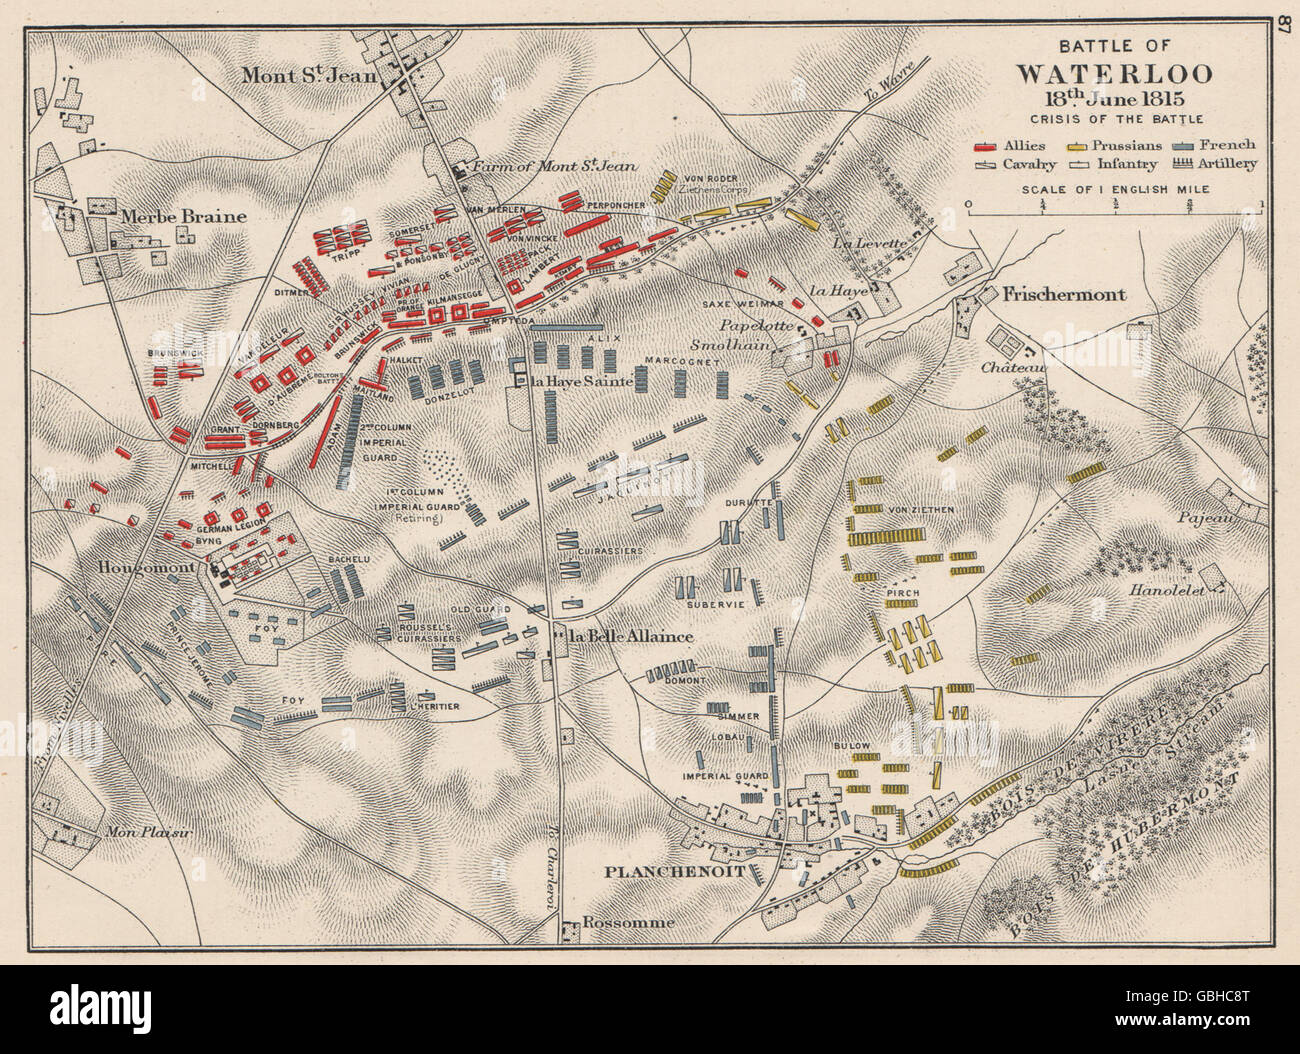 Schlacht von WATERLOO: 18. Juni 1815 "Krise der Schlacht", 1907 antike Karte Stockfoto